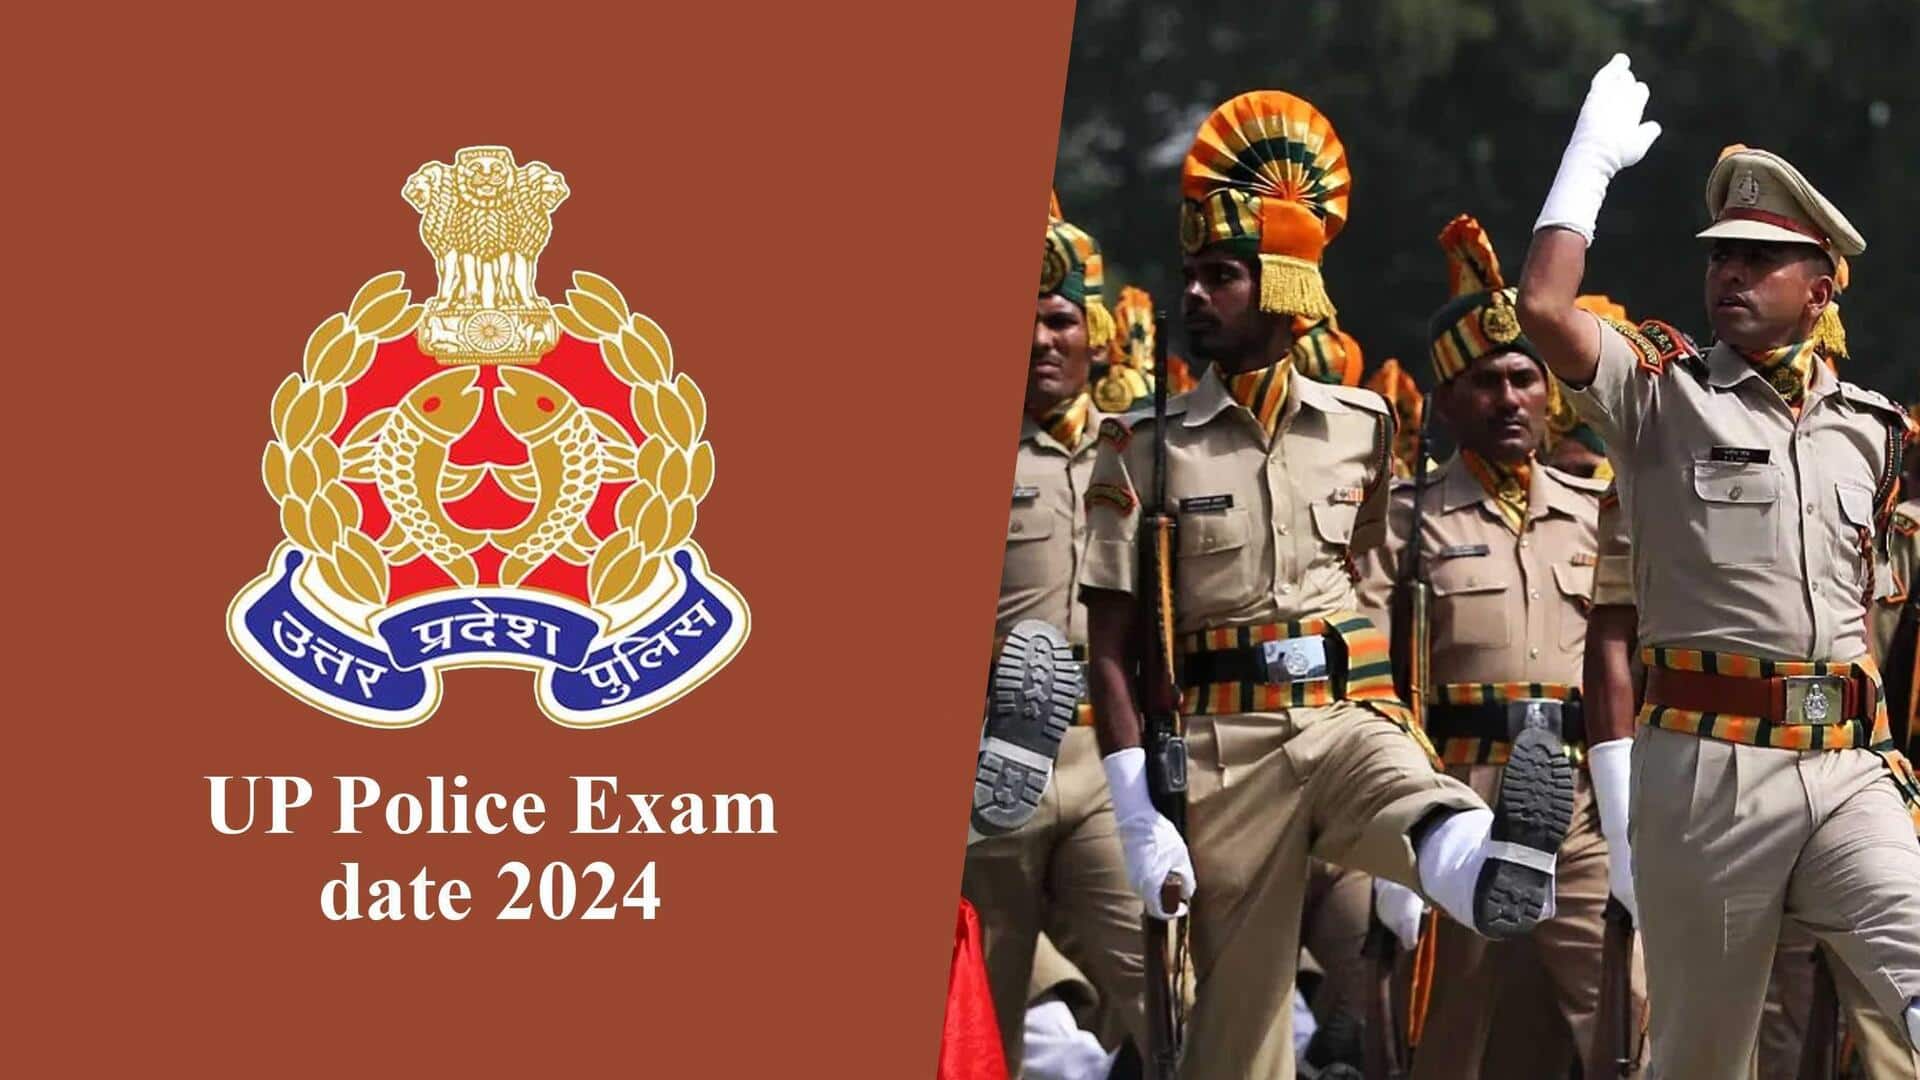 उत्तर प्रदेश पुलिस की 3 भर्ती परीक्षाओं की तारीख घोषित, 2,430 पदों पर होगी भर्ती